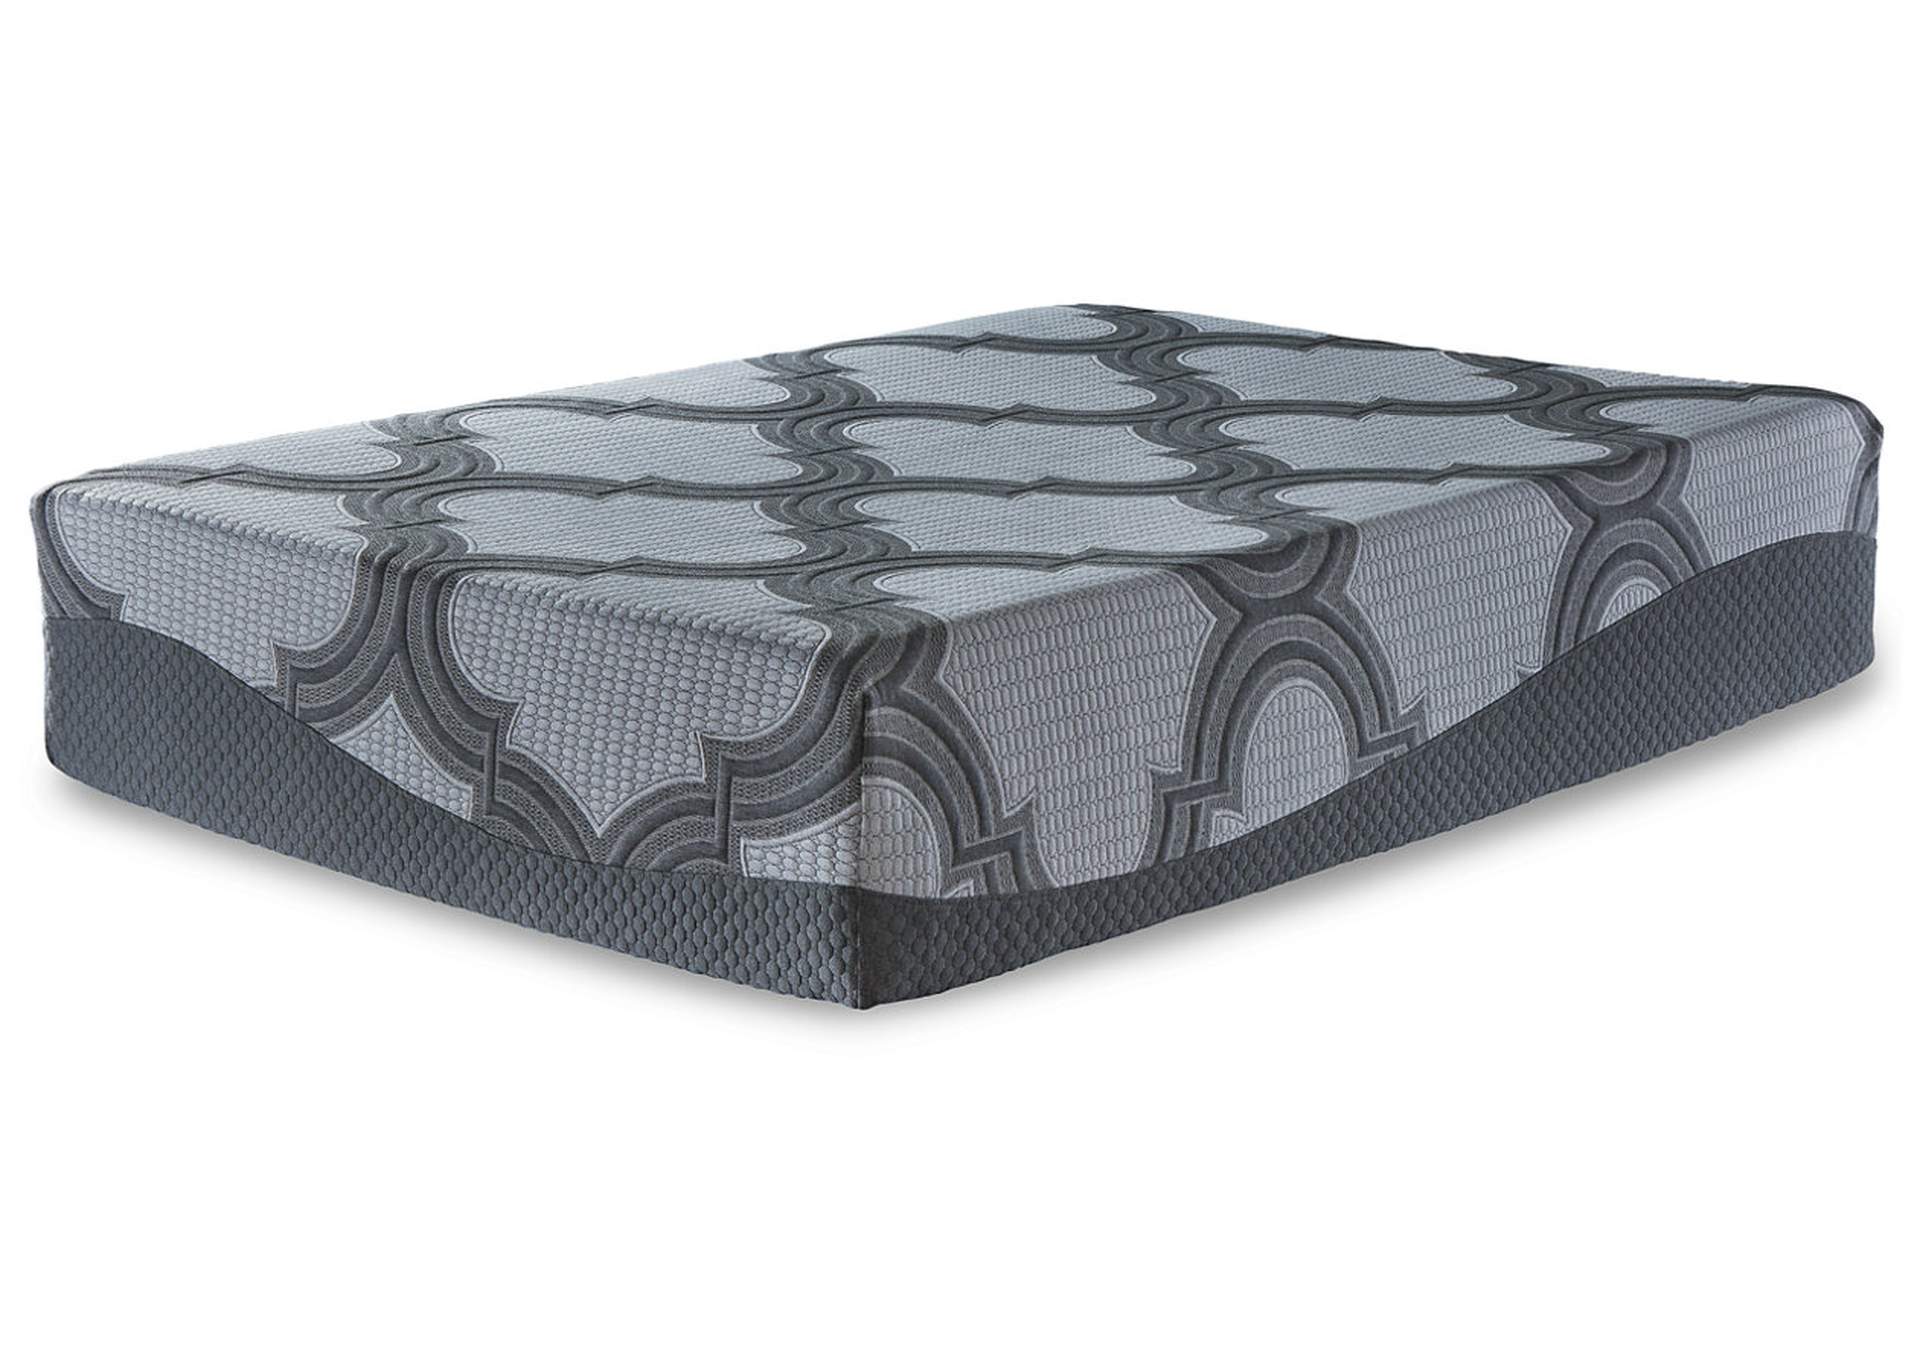 14 inch queen mattress sheets